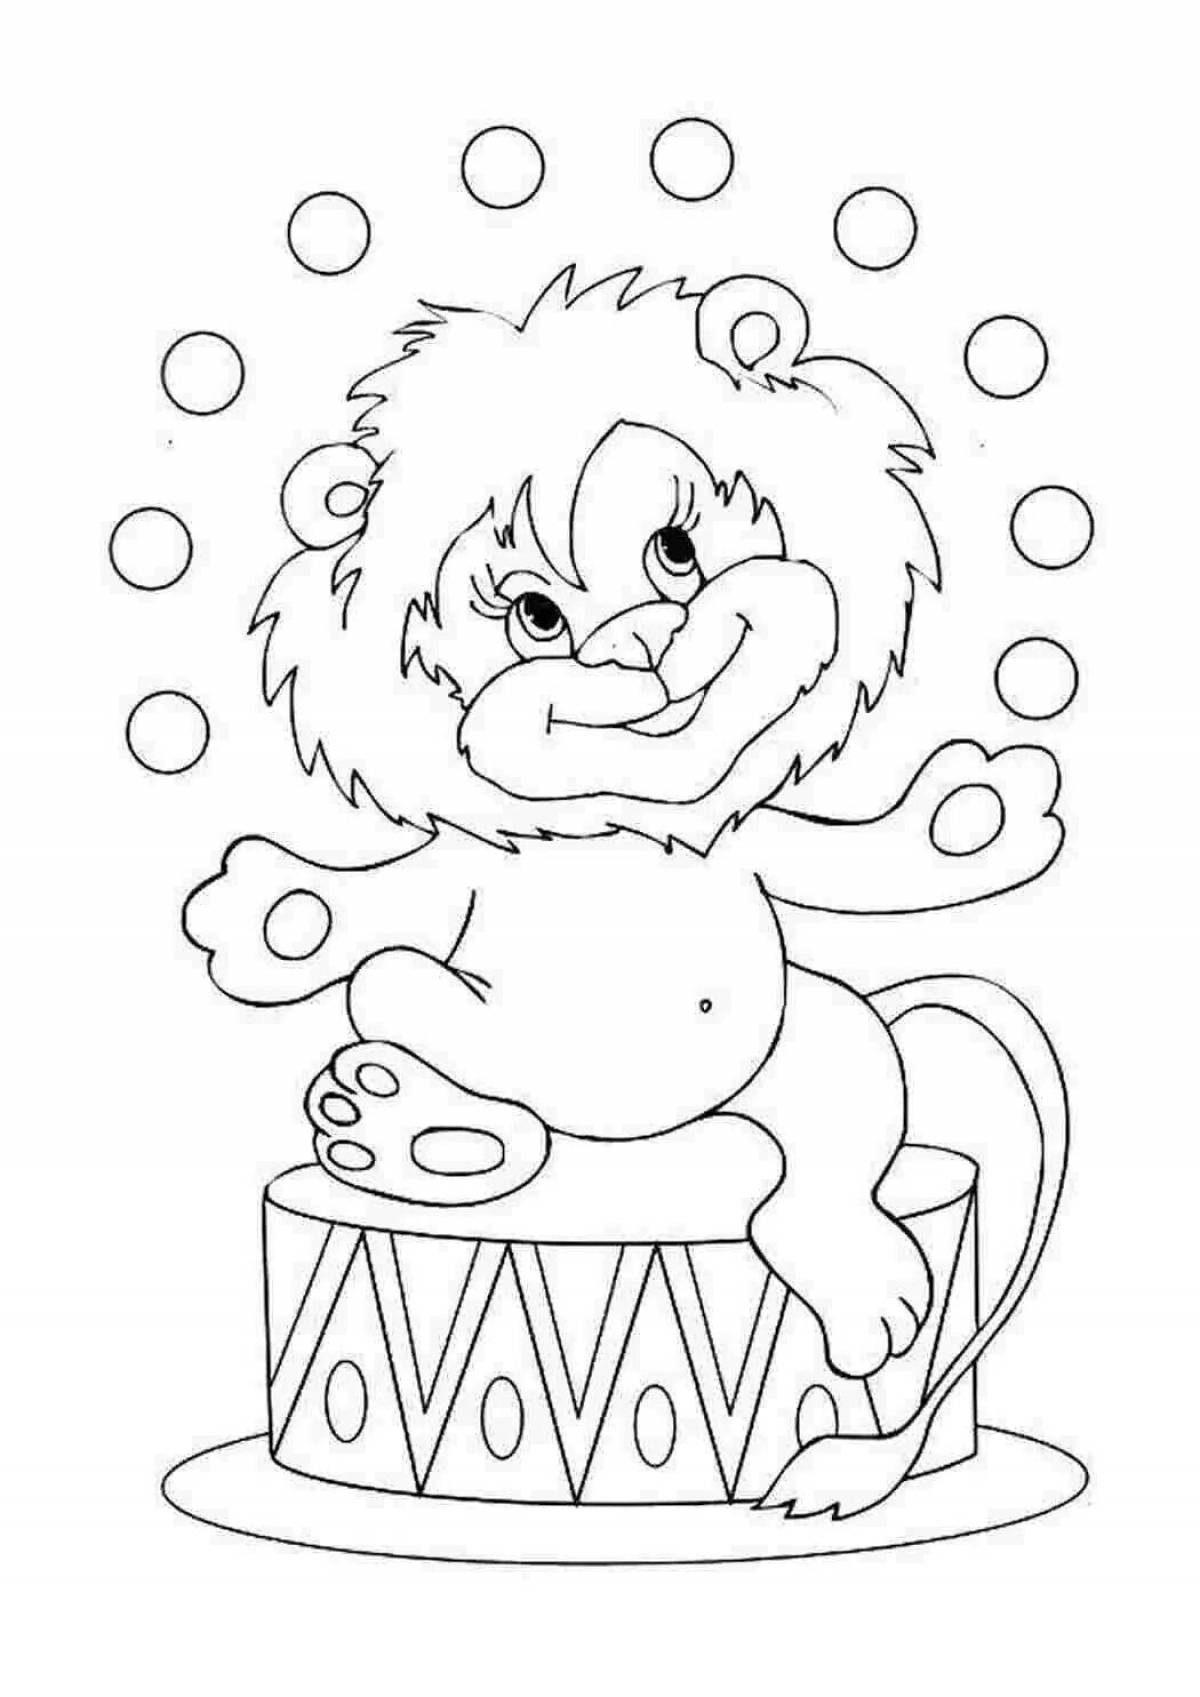 Забавная раскраска львенка для дошкольников